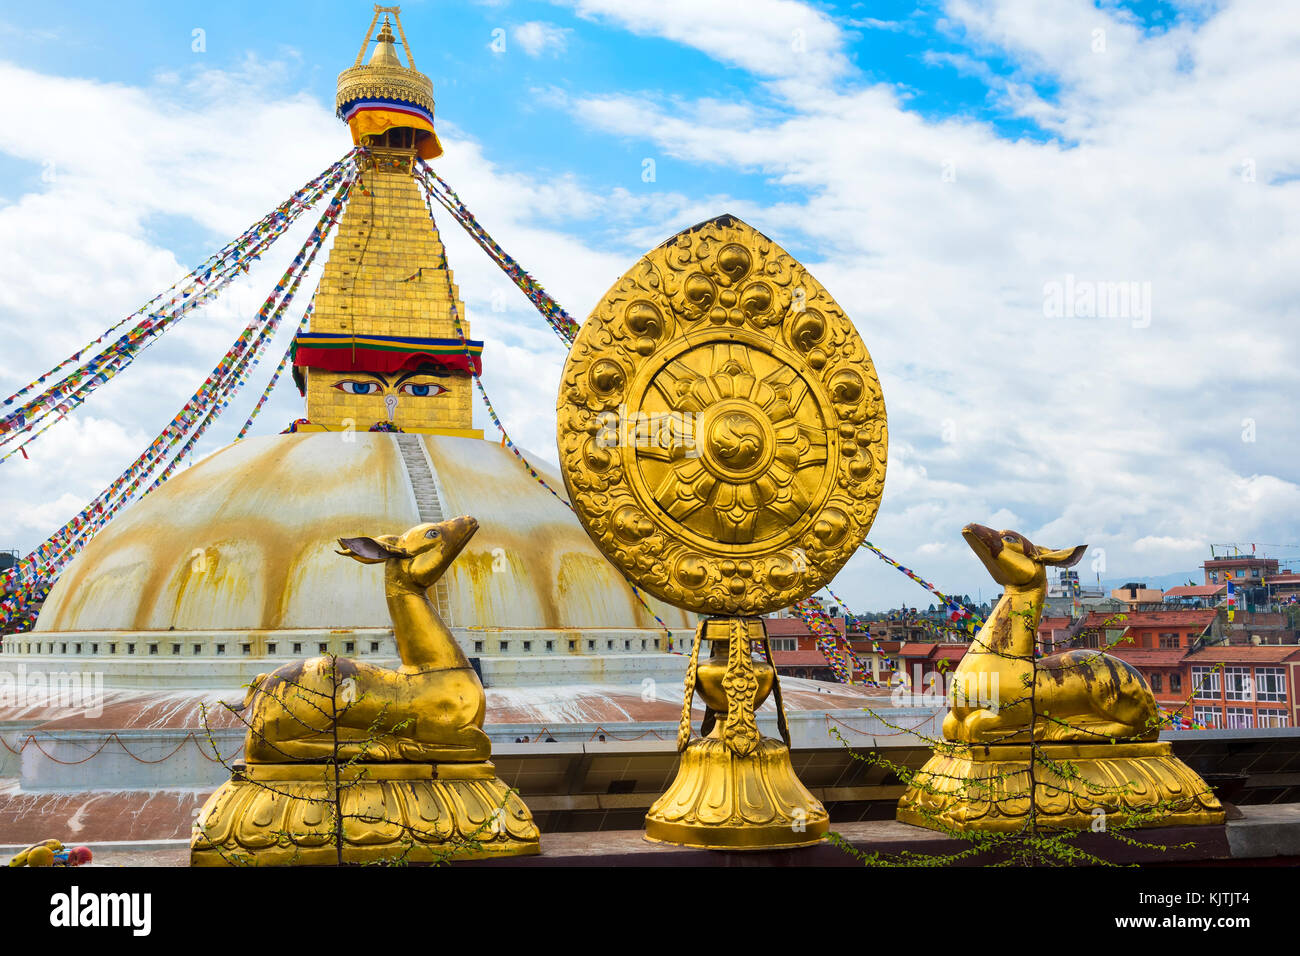 Hirsch als Symbol für Harmonie, Glück, Frieden und Langlebigkeit, Boudhanath Stupa, der größten asiatischen Stupa, UNESCO-Weltkulturerbe, Kathmandu, Nepal, Asien Stockfoto